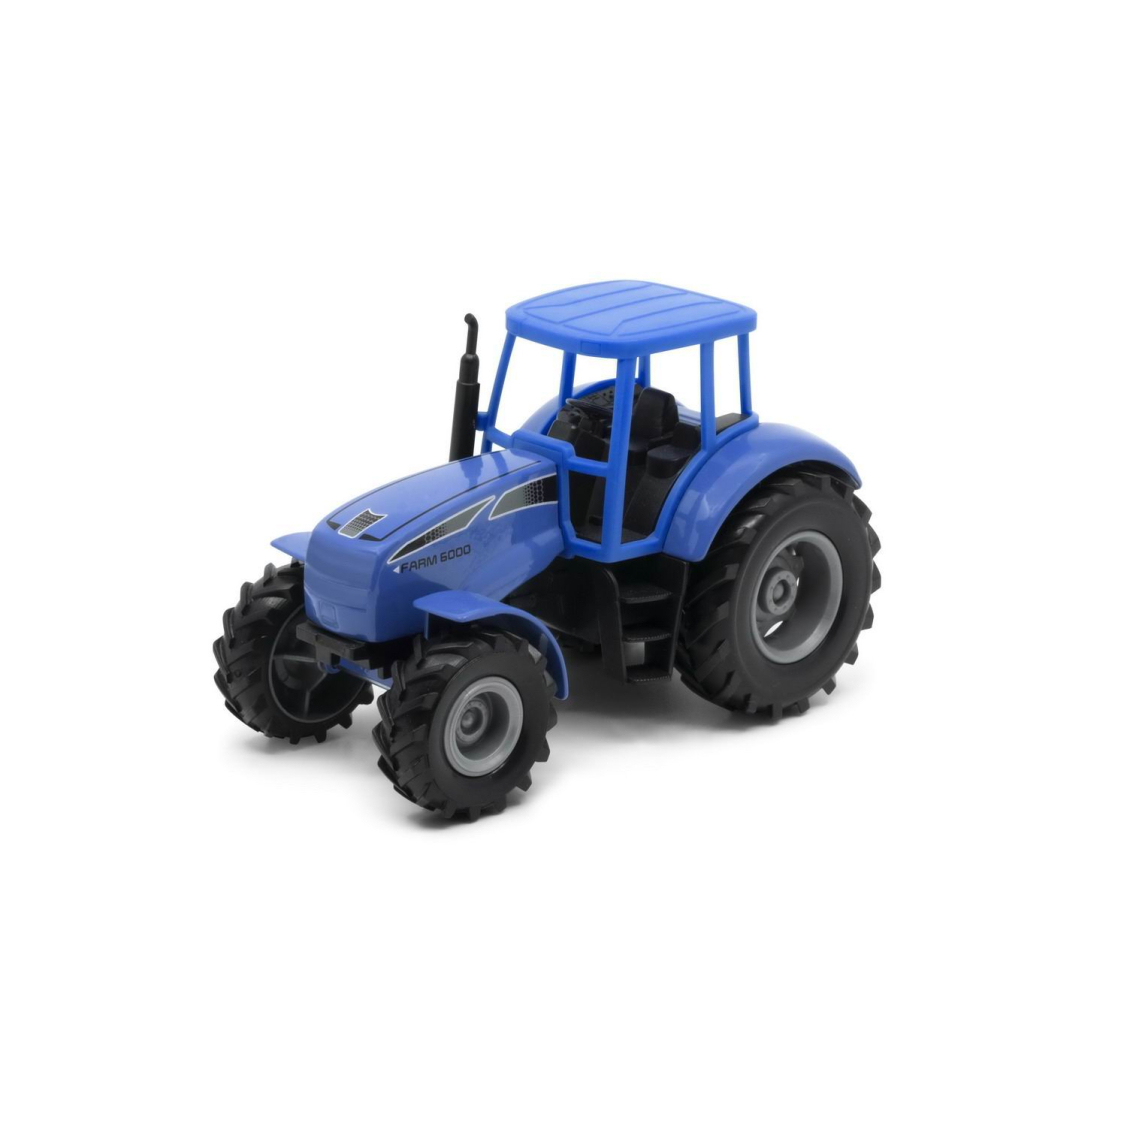 Машинка Welly Трактор синий машинка перевертыш hyper skidding с управлением жестами синий